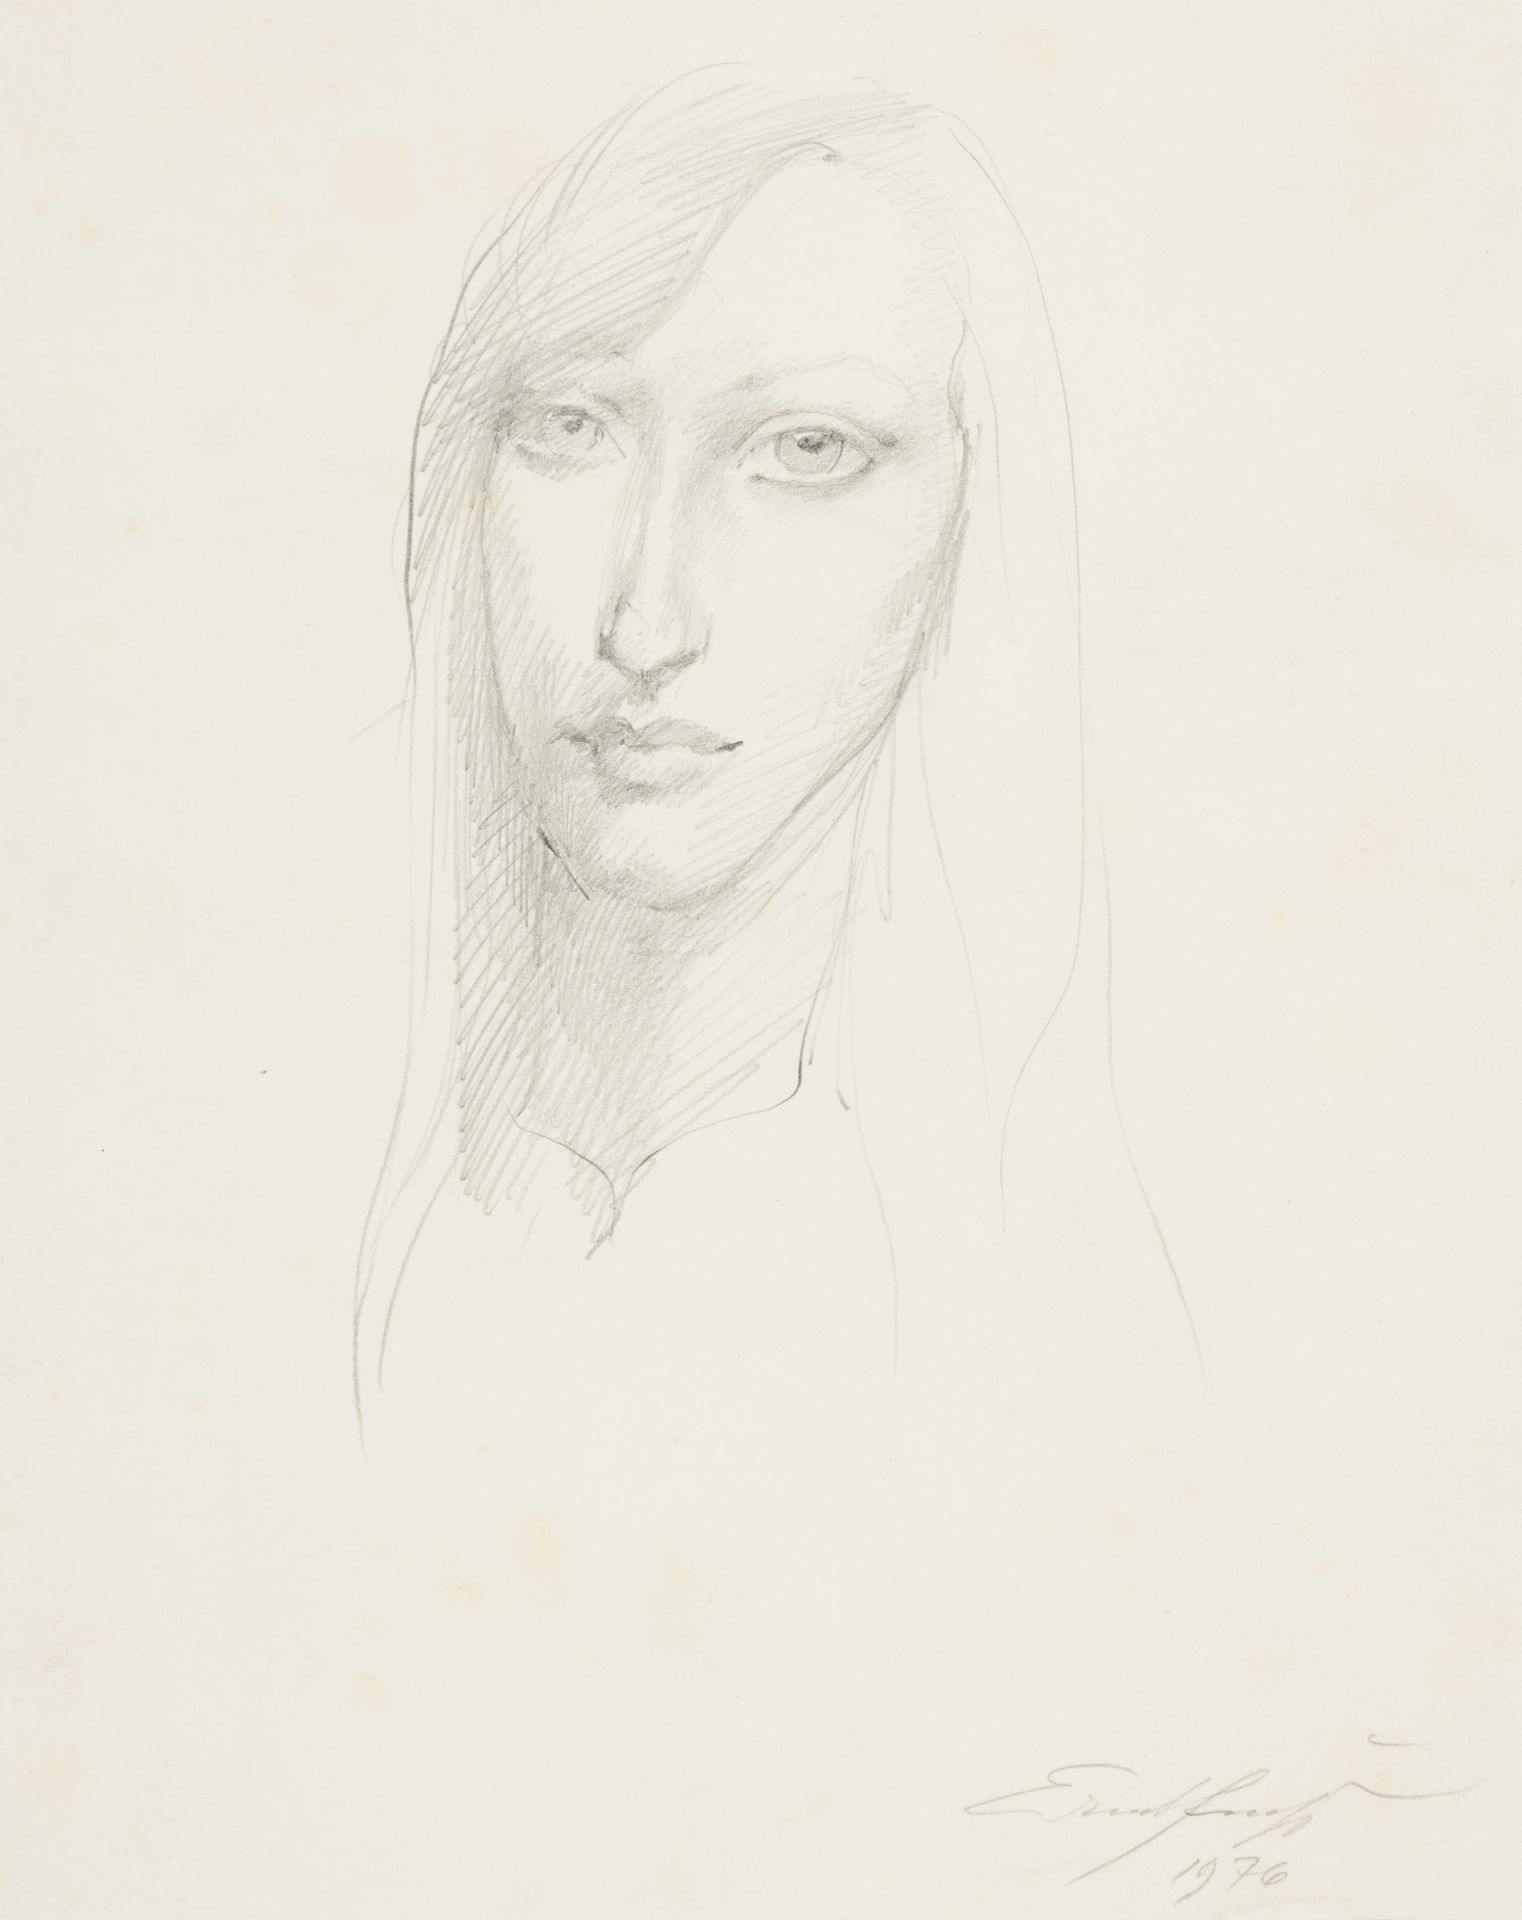 Fuchs, Ernst 肖像，1976年
纸上石墨
右下方有签名和日期
未打开的装裱：34 x 27 cm
有框架的